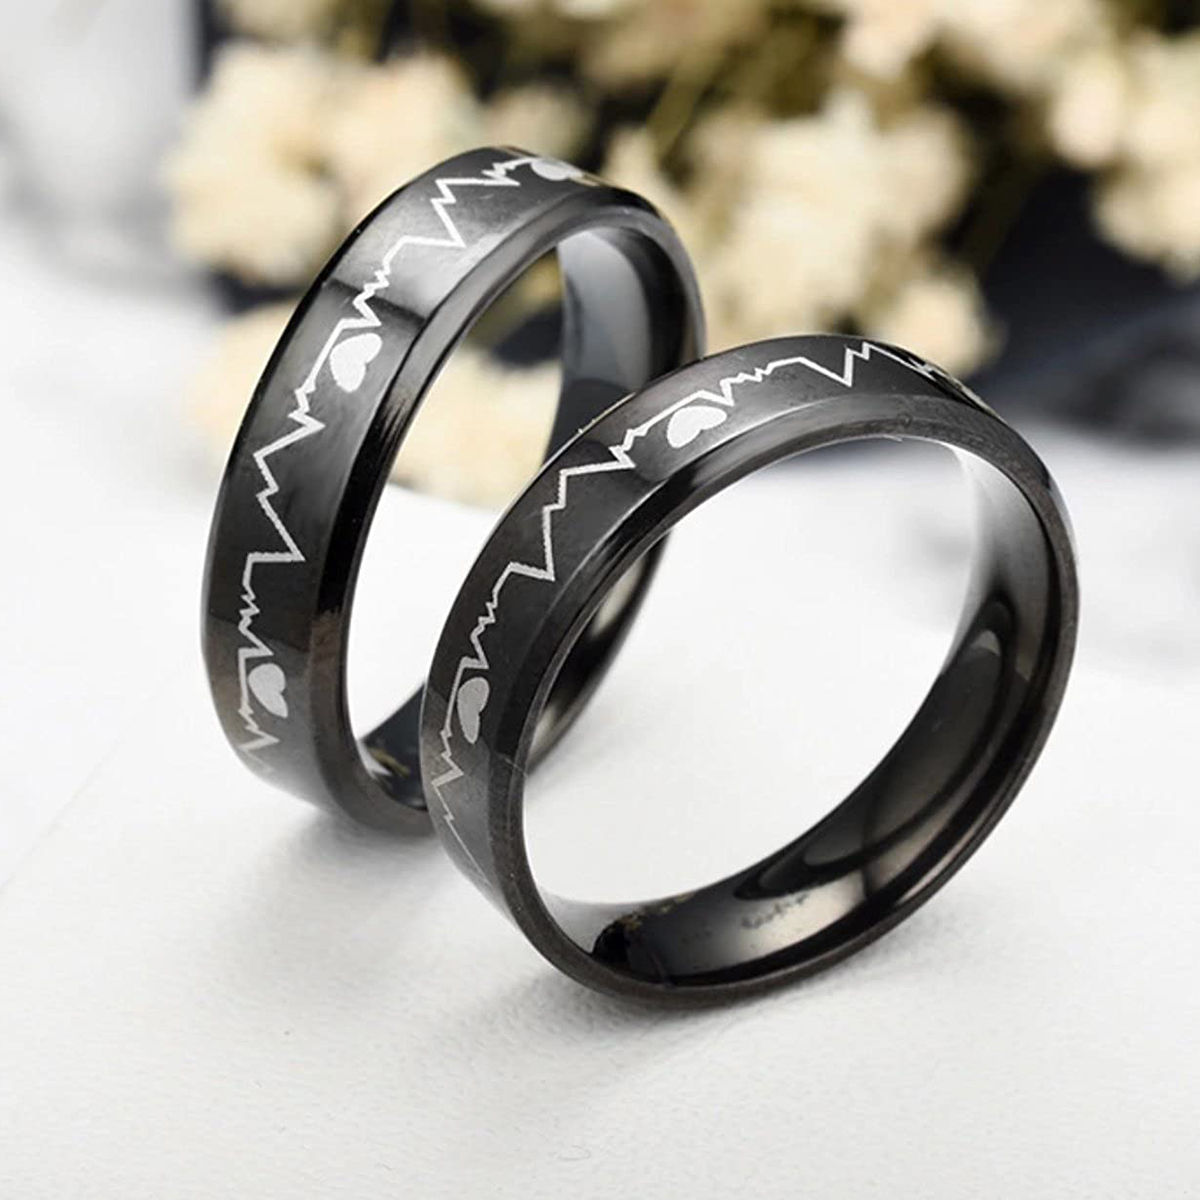 Titanium Wedding Band - Unisex Brushed Silver/black Engagement Ring